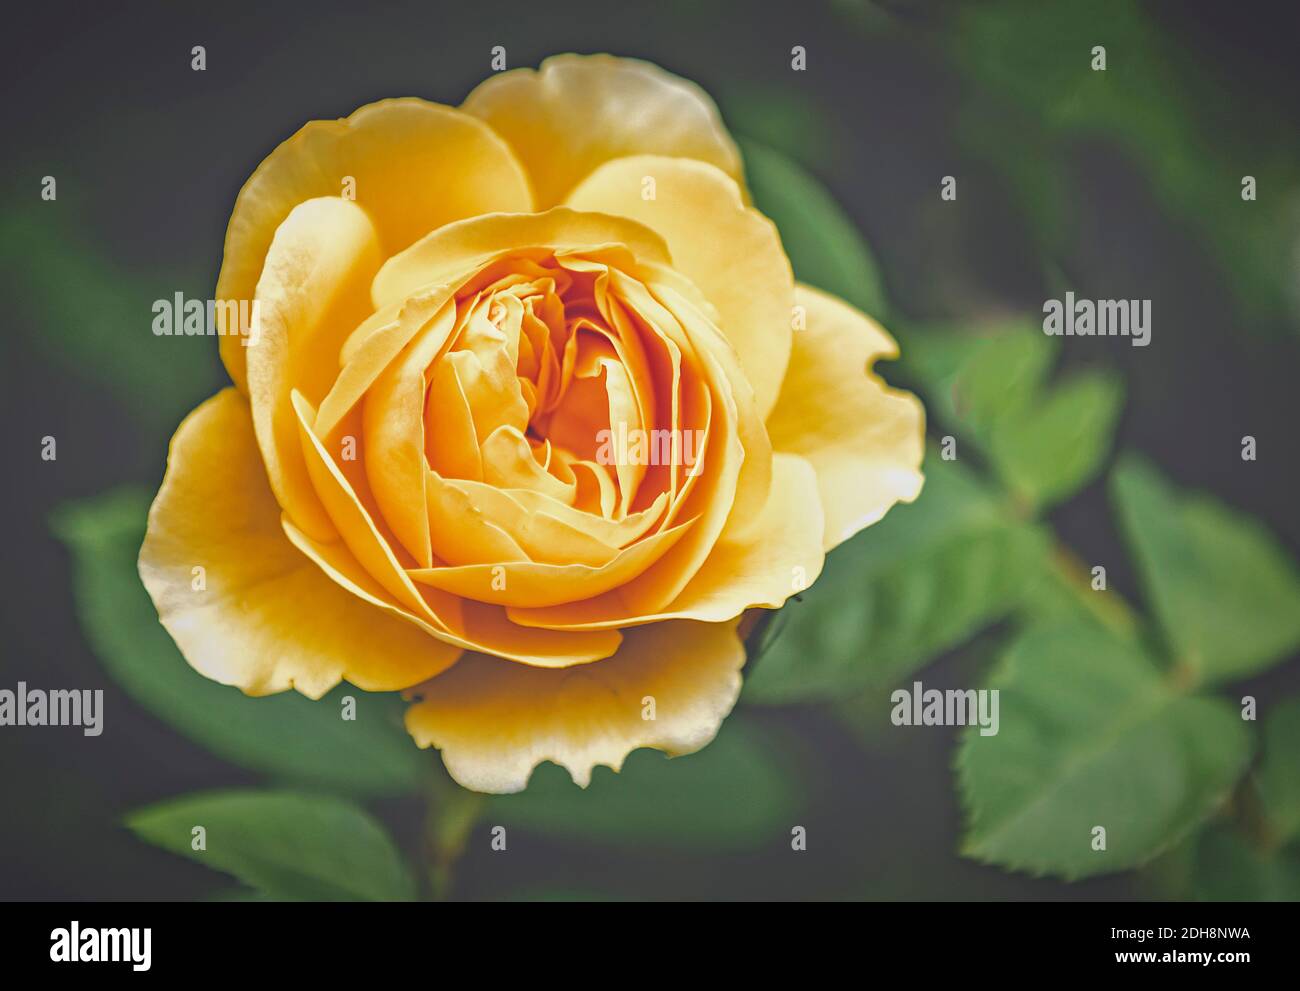 Rose, Rosa, Nahaufnahme der gelben Blume, die im Freien wächst. Stockfoto